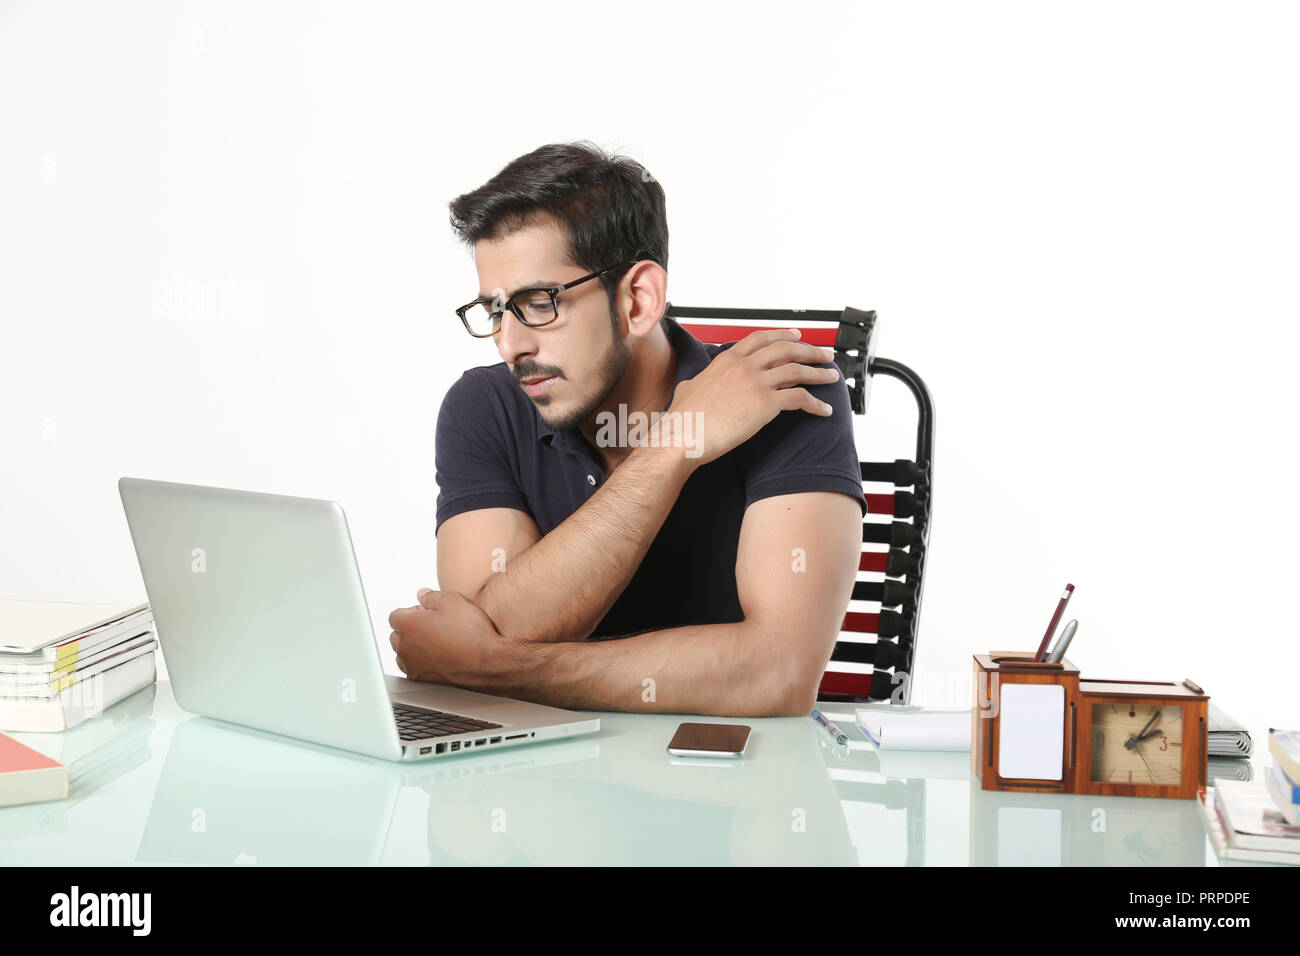 L'homme est à la recherche de travail avec ordinateur portable noir portant des lunettes. isolé sur fond blanc. Banque D'Images